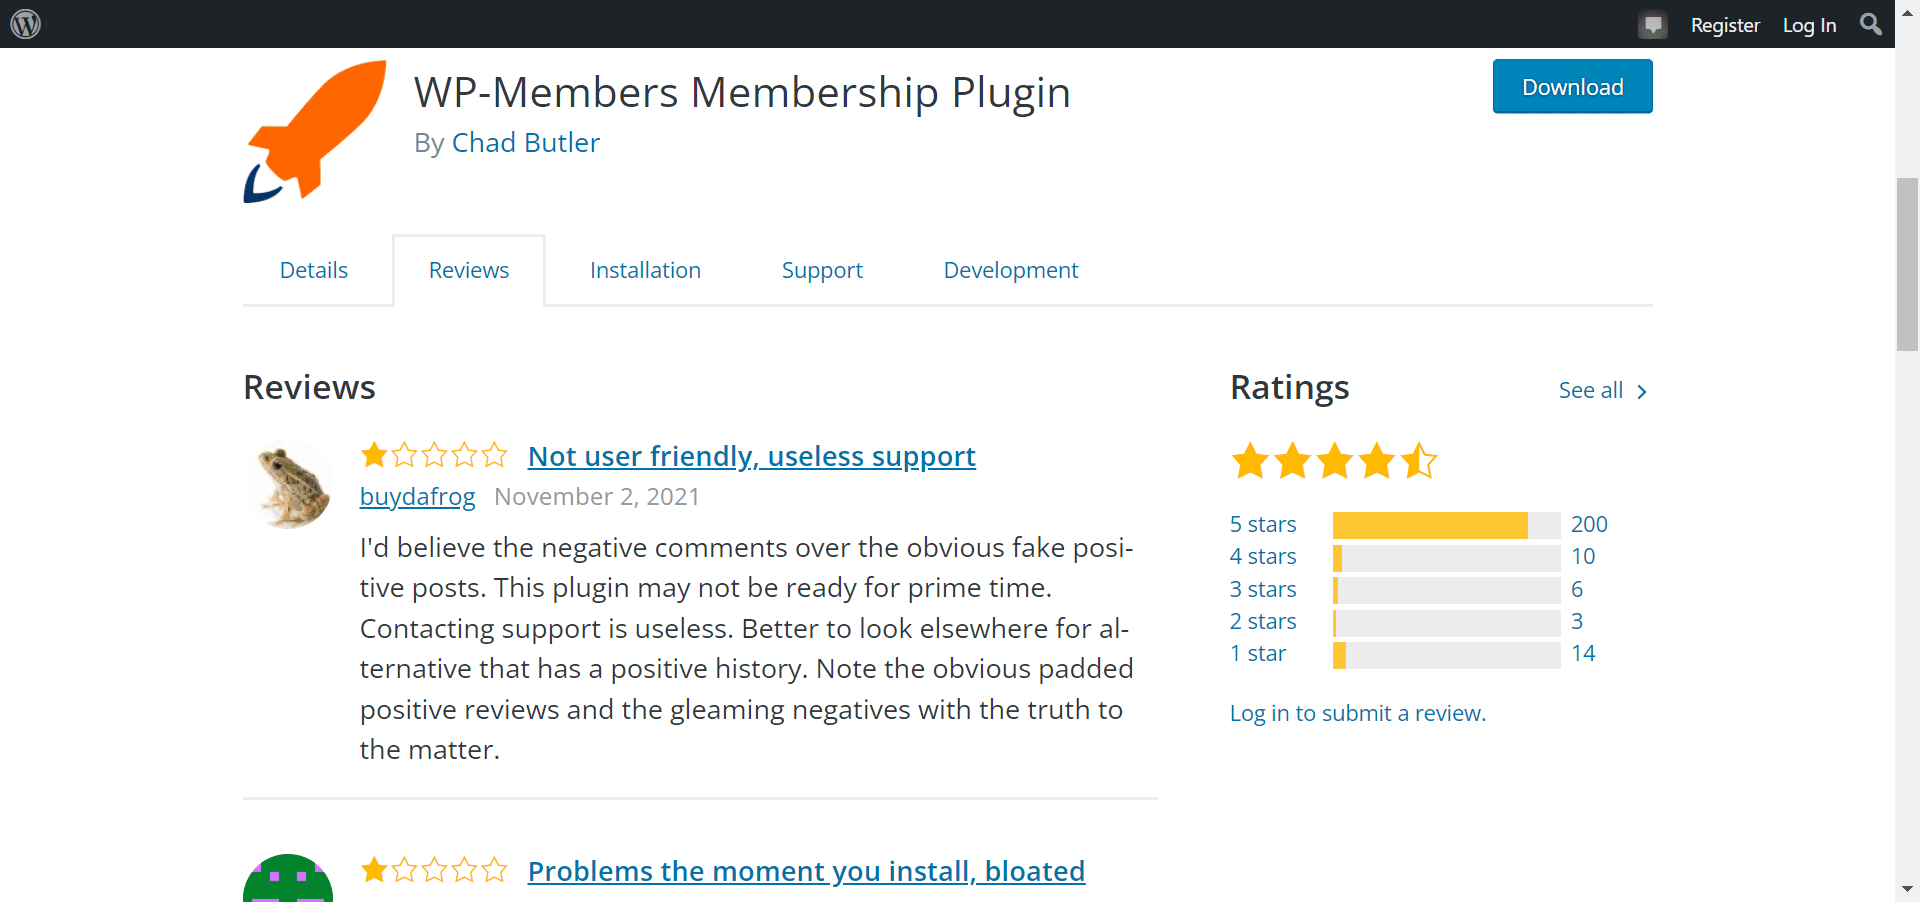 What is WP membership